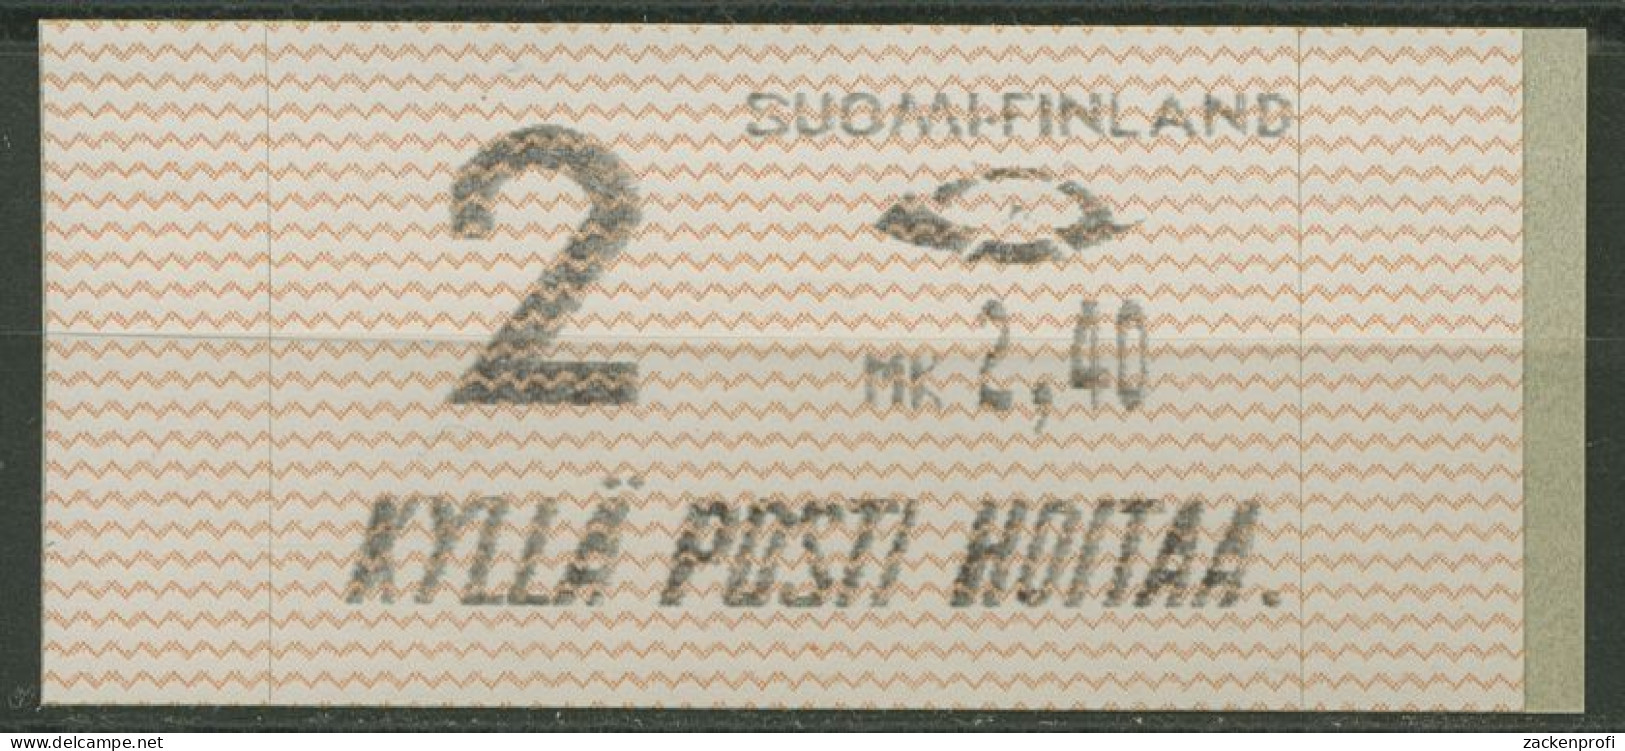 Finnland Automatenmarken 1991 MK 2,40 Einzelwert, ATM 10.1 Z2 Postfrisch - Automatenmarken [ATM]